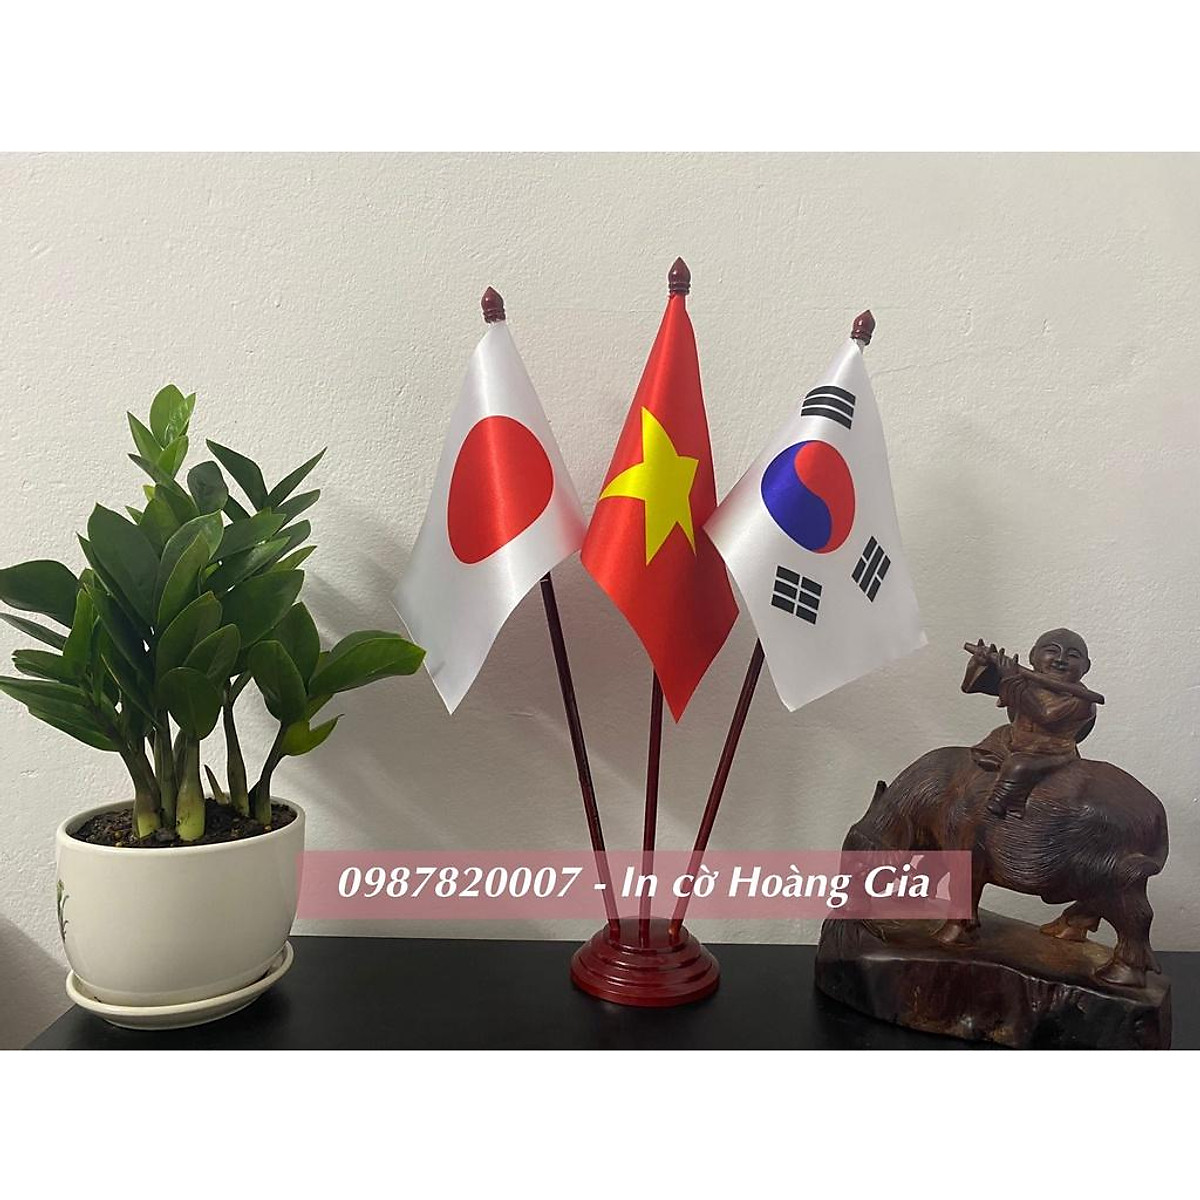 Cờ để bàn đế gỗ 3 kết hợp ba quốc gia Việt Nam, Nhật Bản và Hàn Quốc là biểu tượng cho tình hữu nghị, sự hợp tác và hiểu biết giữa các nước. Hãy xem hình ảnh để cảm nhận vẻ đẹp của biểu tượng này và cùng tôn vinh những giá trị văn hóa, văn minh của đông nam Á.